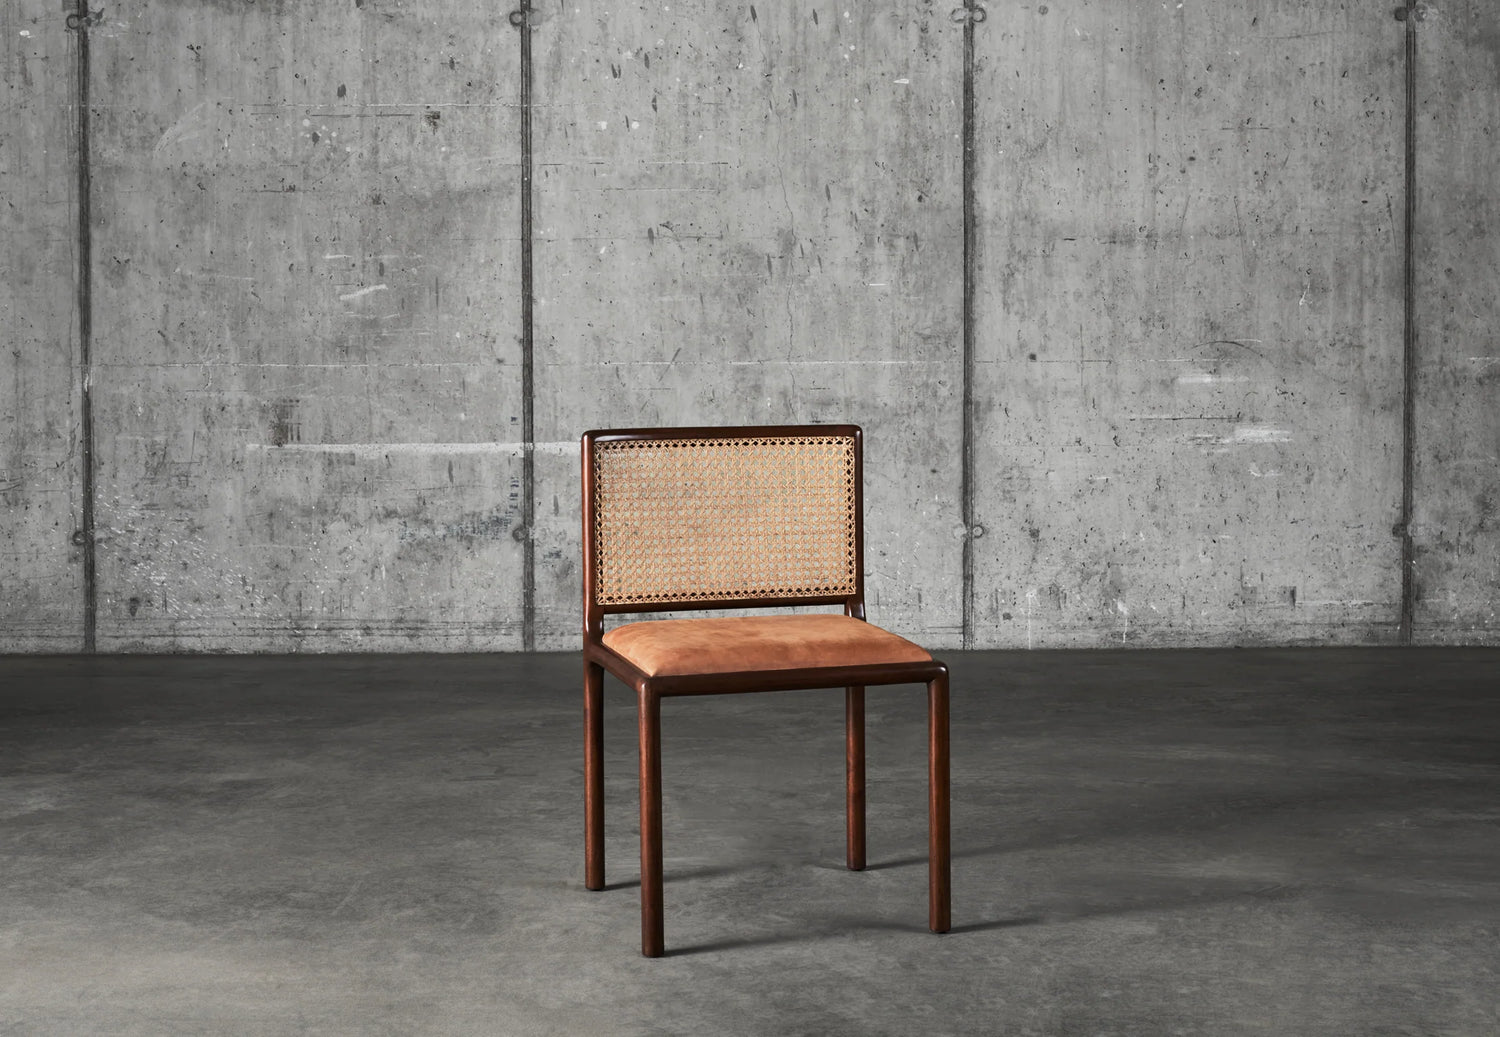 Bilde av stolen Mesh Chair fra Dusty Deco i mørk mahogni, rygg i flettet rotting og sete i brunt skinn mot rå betongvegg.